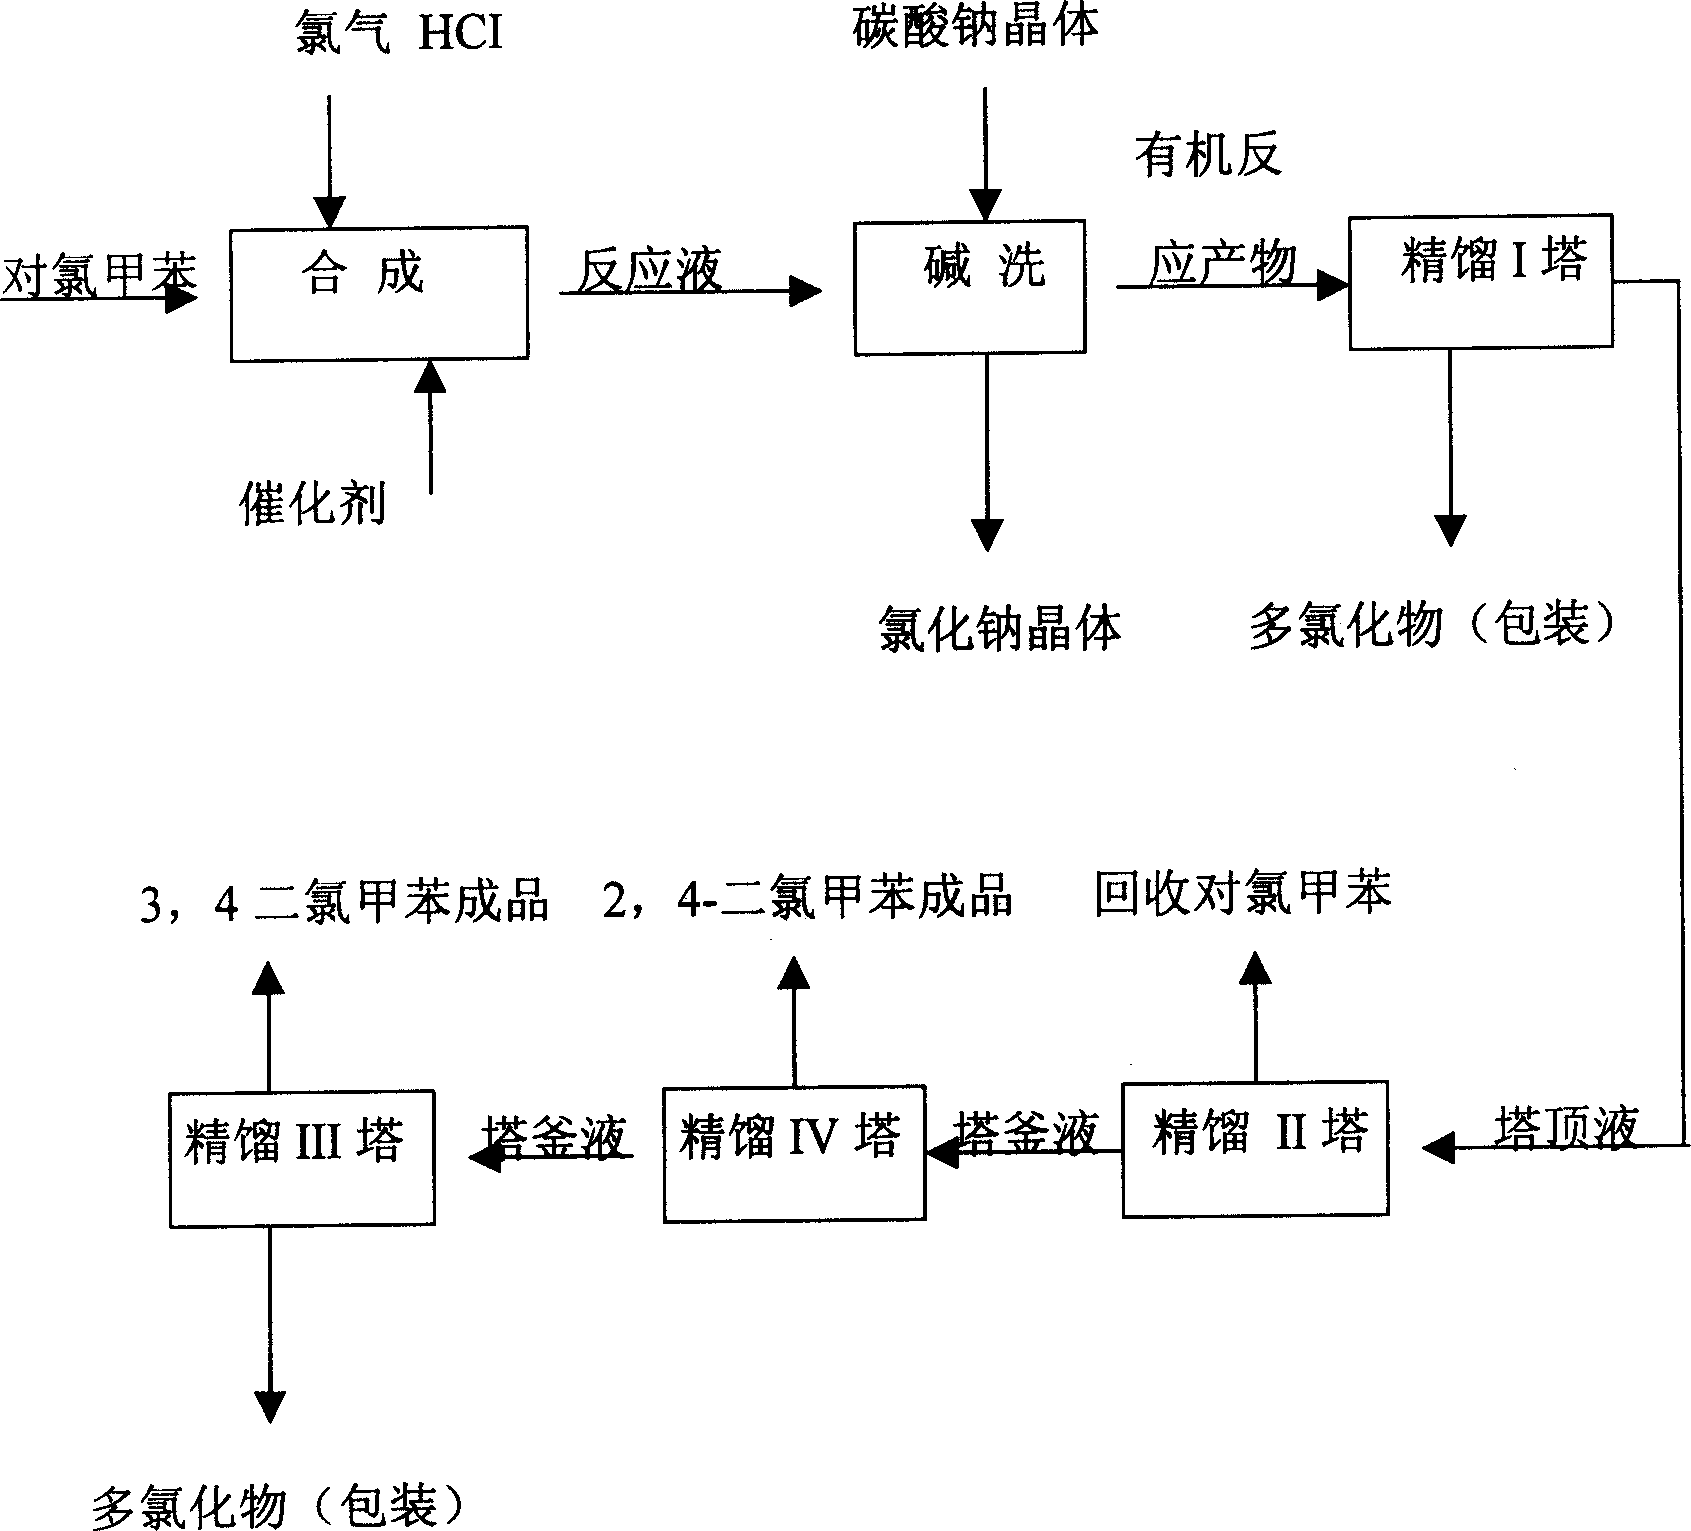 Method for preparing 2,4-toluene dichloride